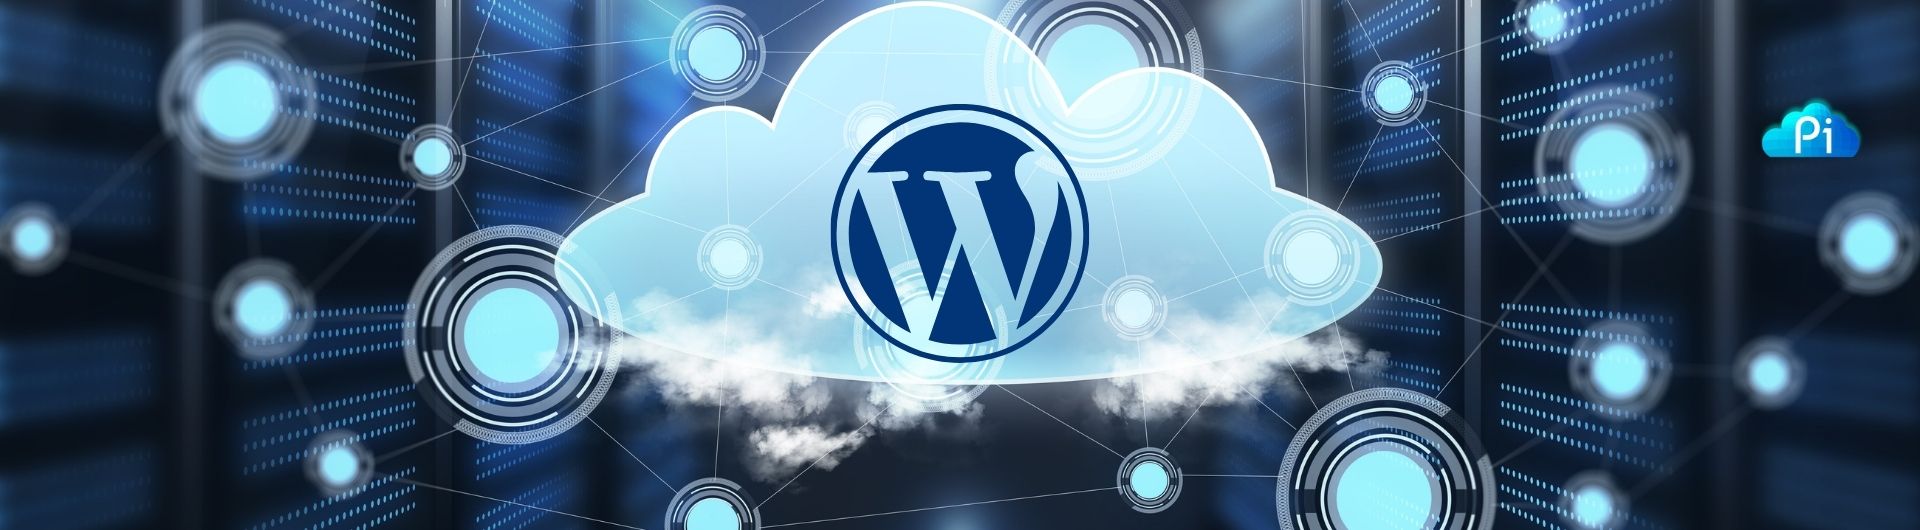 Centralizando gerenciamento Wordpress Pi Blog